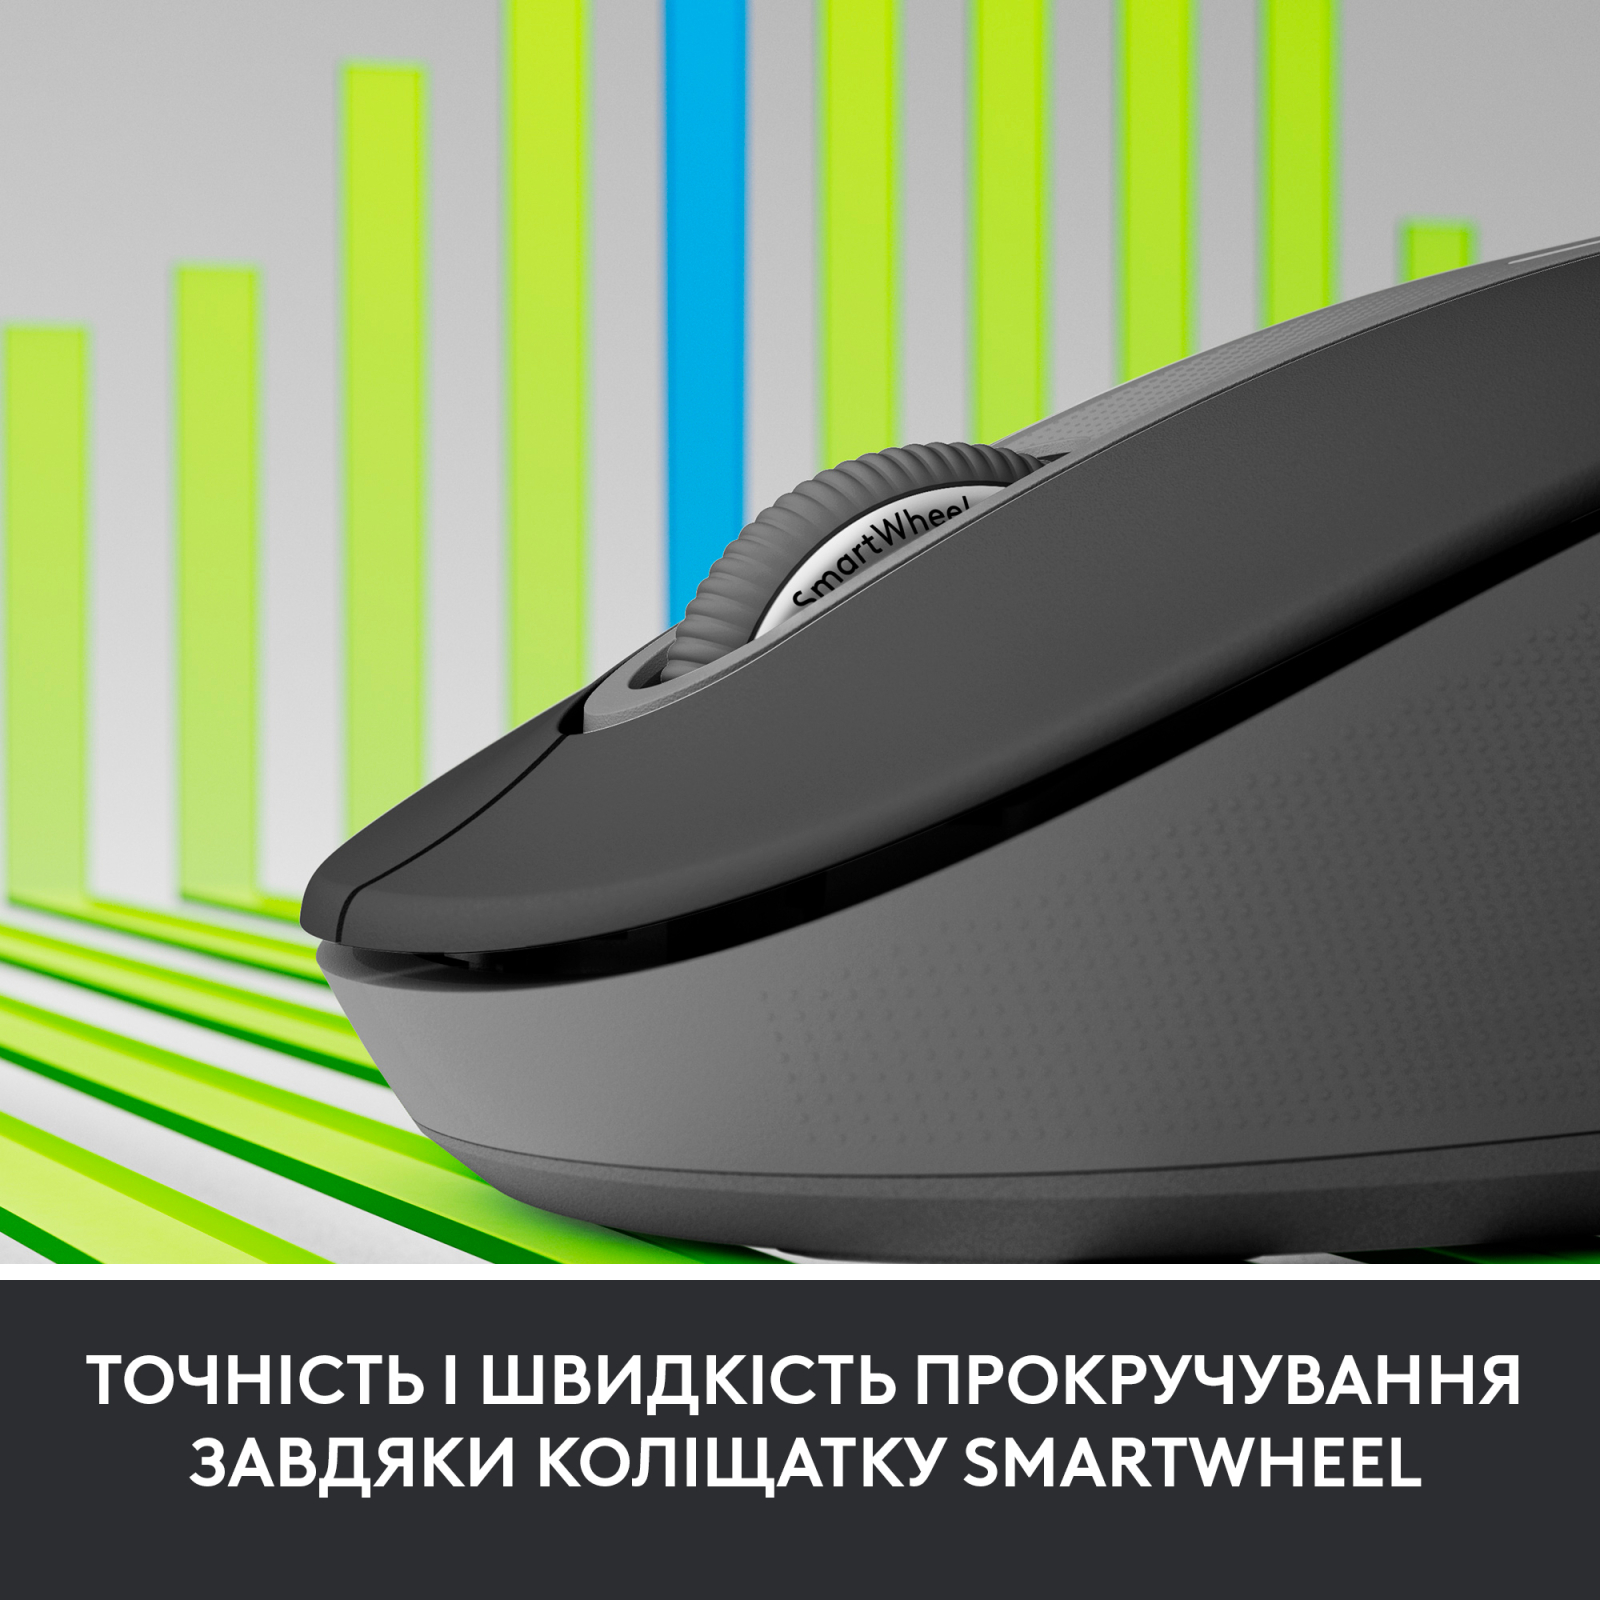 Мышка Logitech Signature M650 Wireless for Business Graphite (910-006274) изображение 5